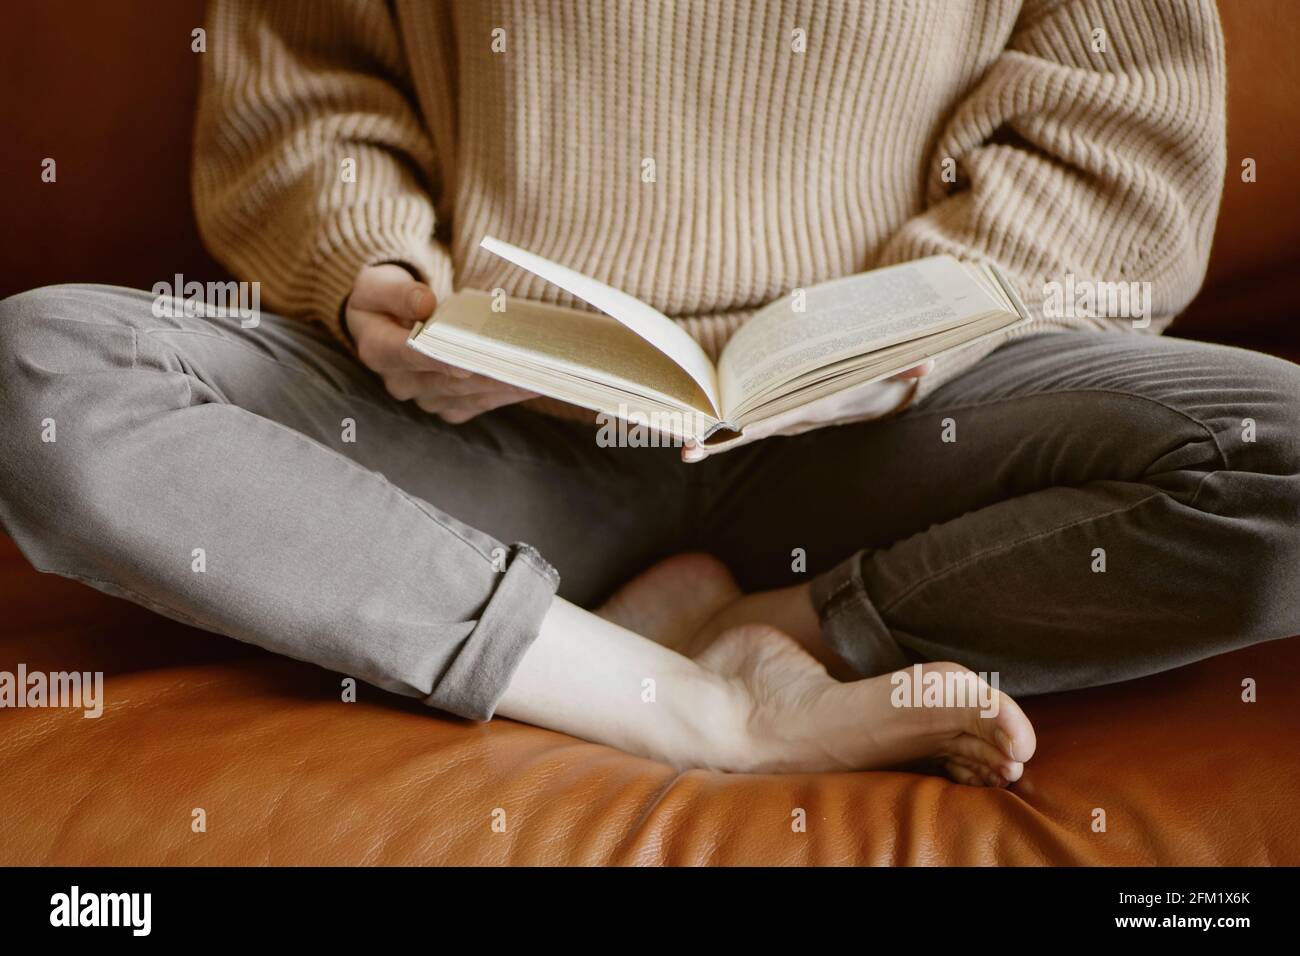 Imagen recortada de una mujer sentada en el sofá y leyendo un libro. Foto de stock